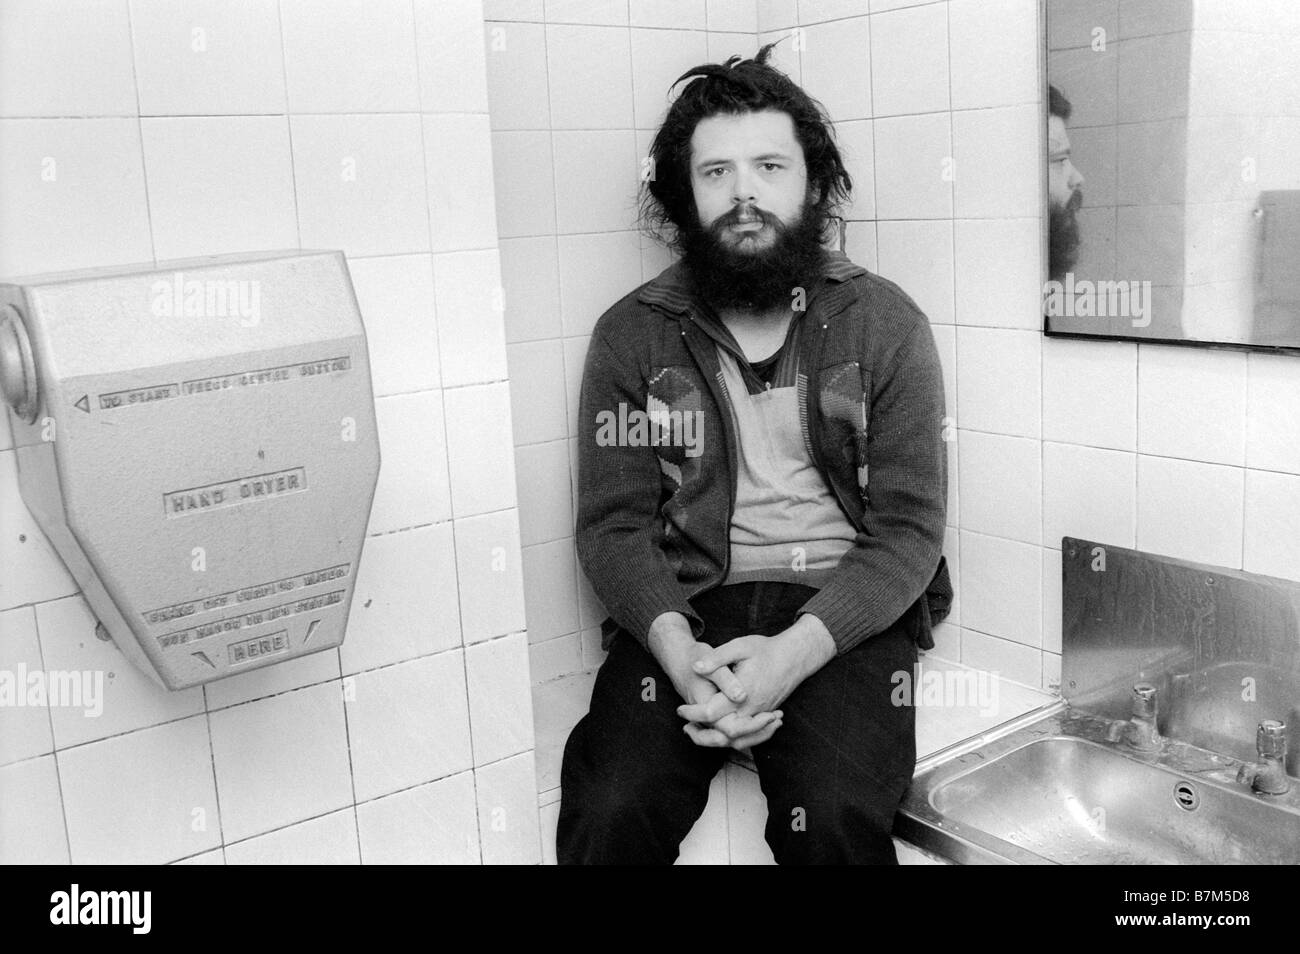 Obdachlosen jungen Mann mit Bart und verfilzte Haare verbringen die Nacht in einer öffentlichen Toilette im Winter Königreich warm zu halten Stockfoto